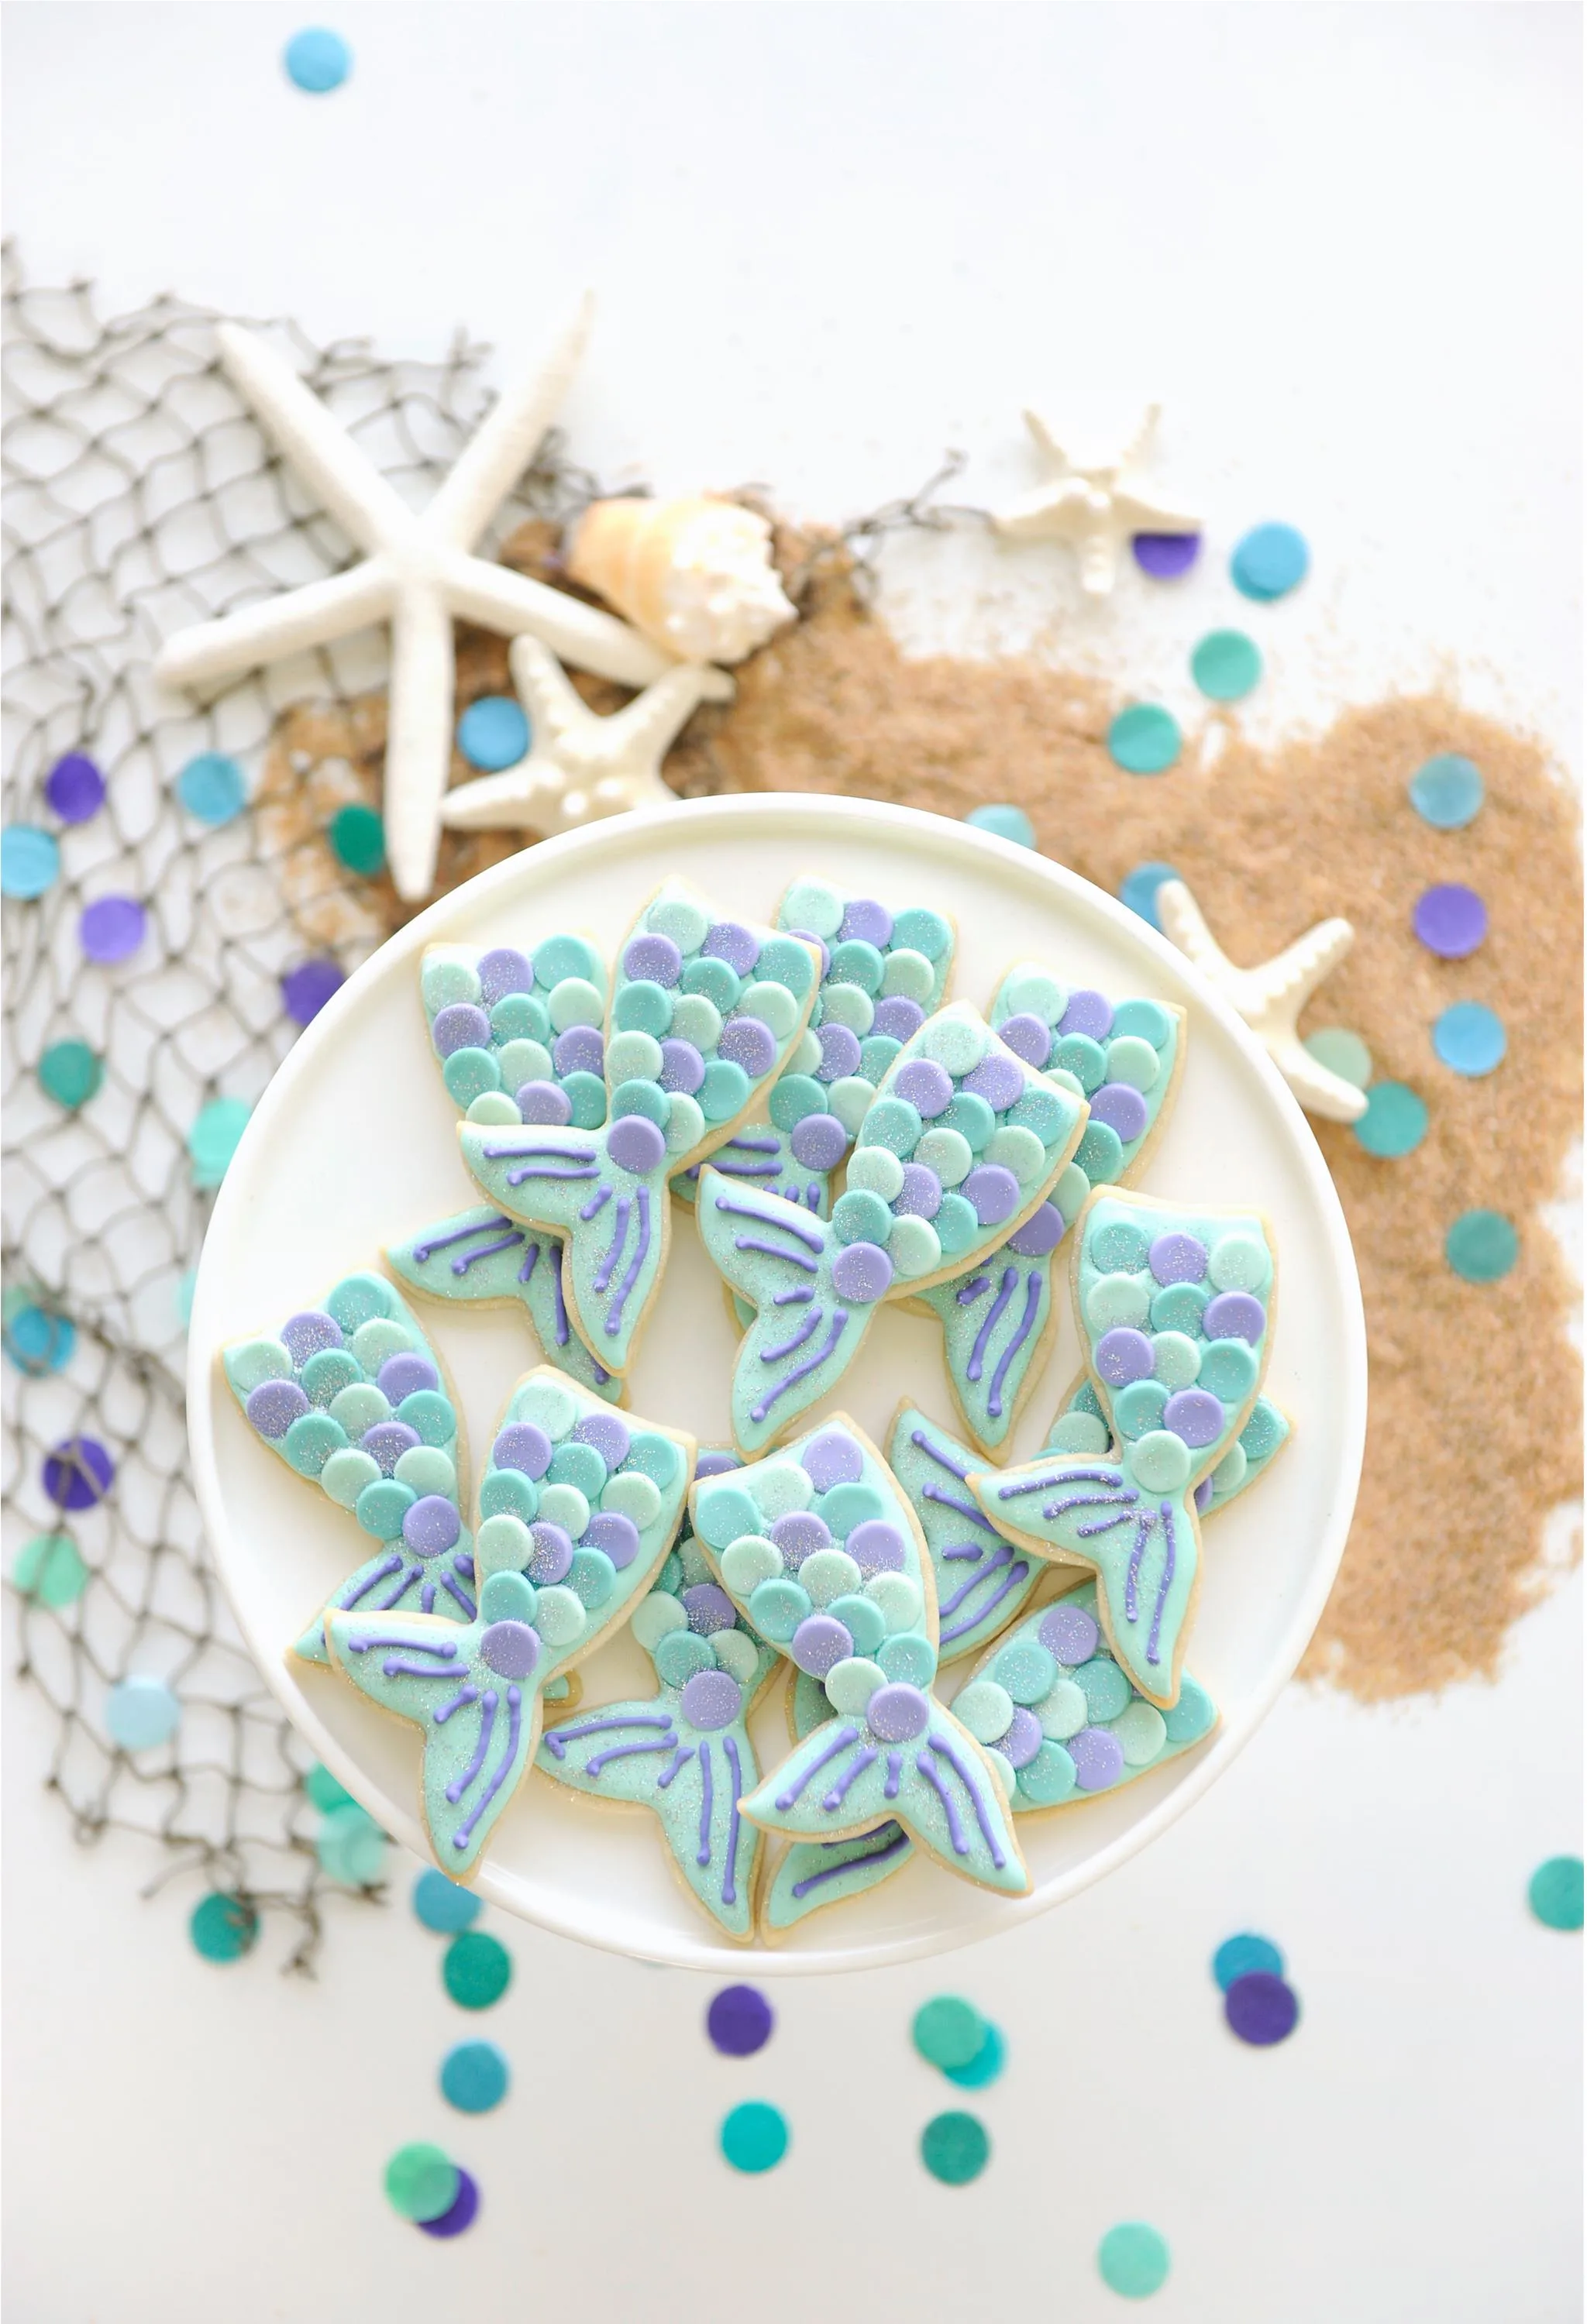 Mermaid Tail Sugar Cookies - Project Nursery